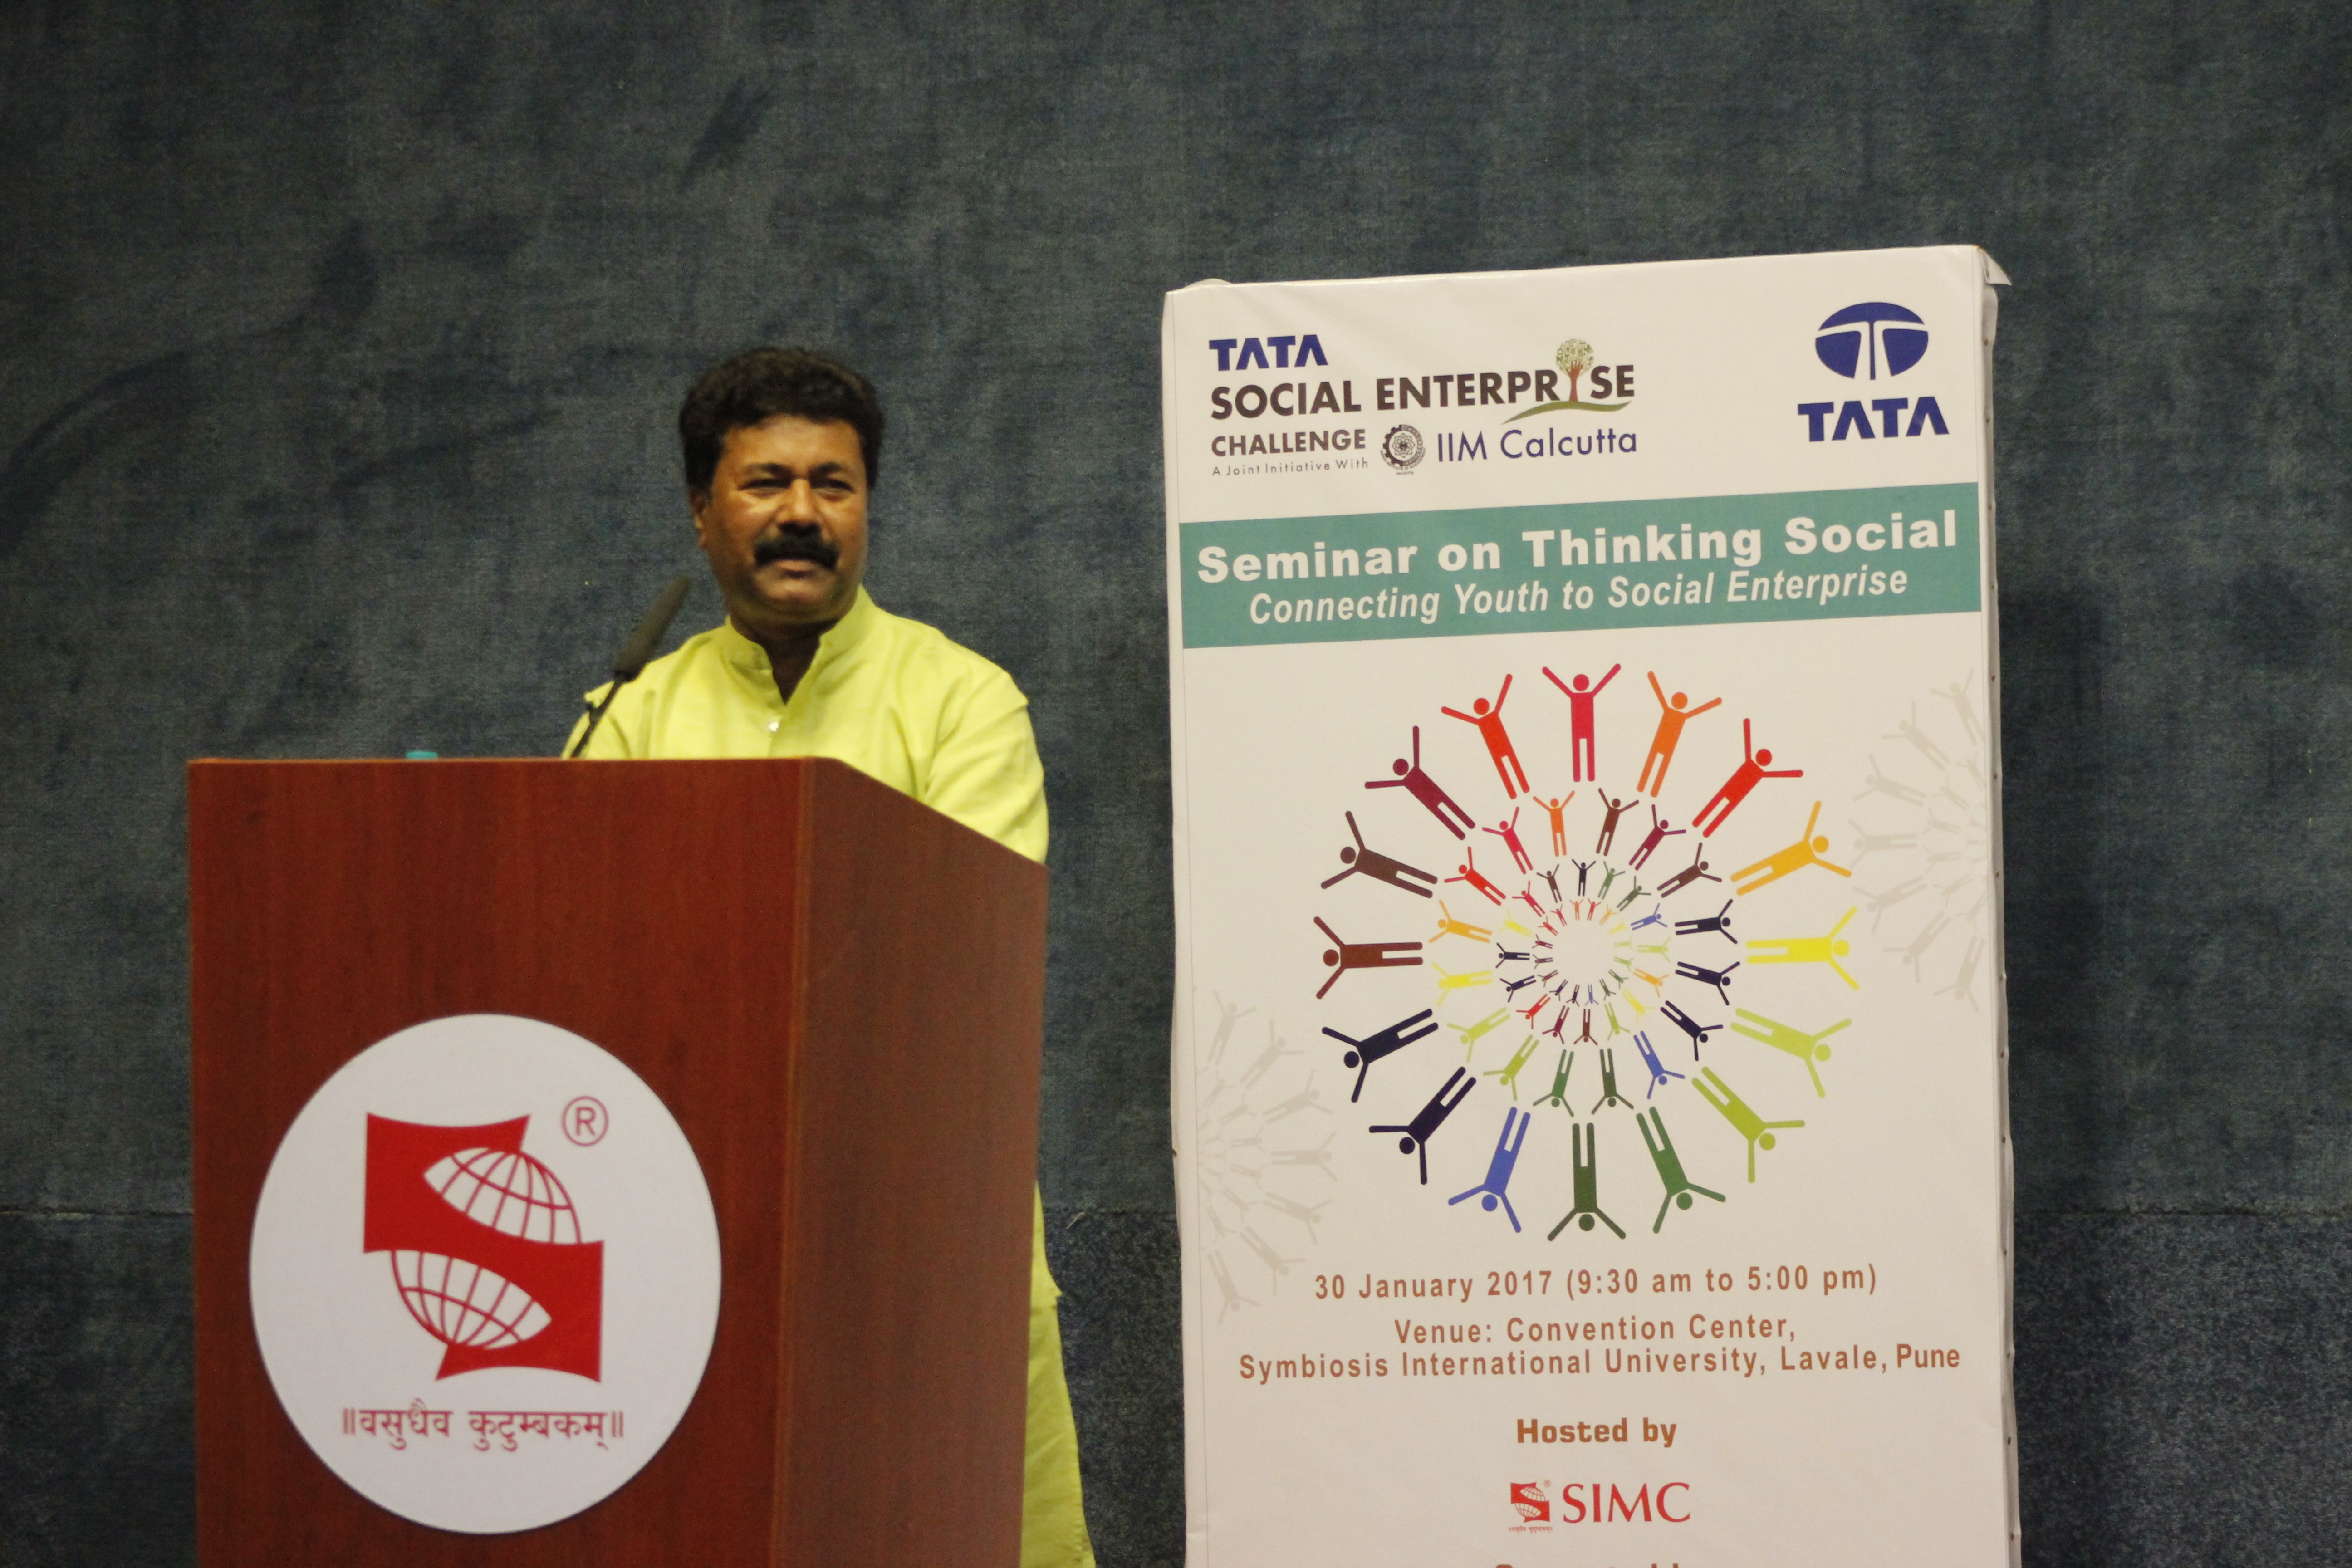 Thinking Social Seminar Pune